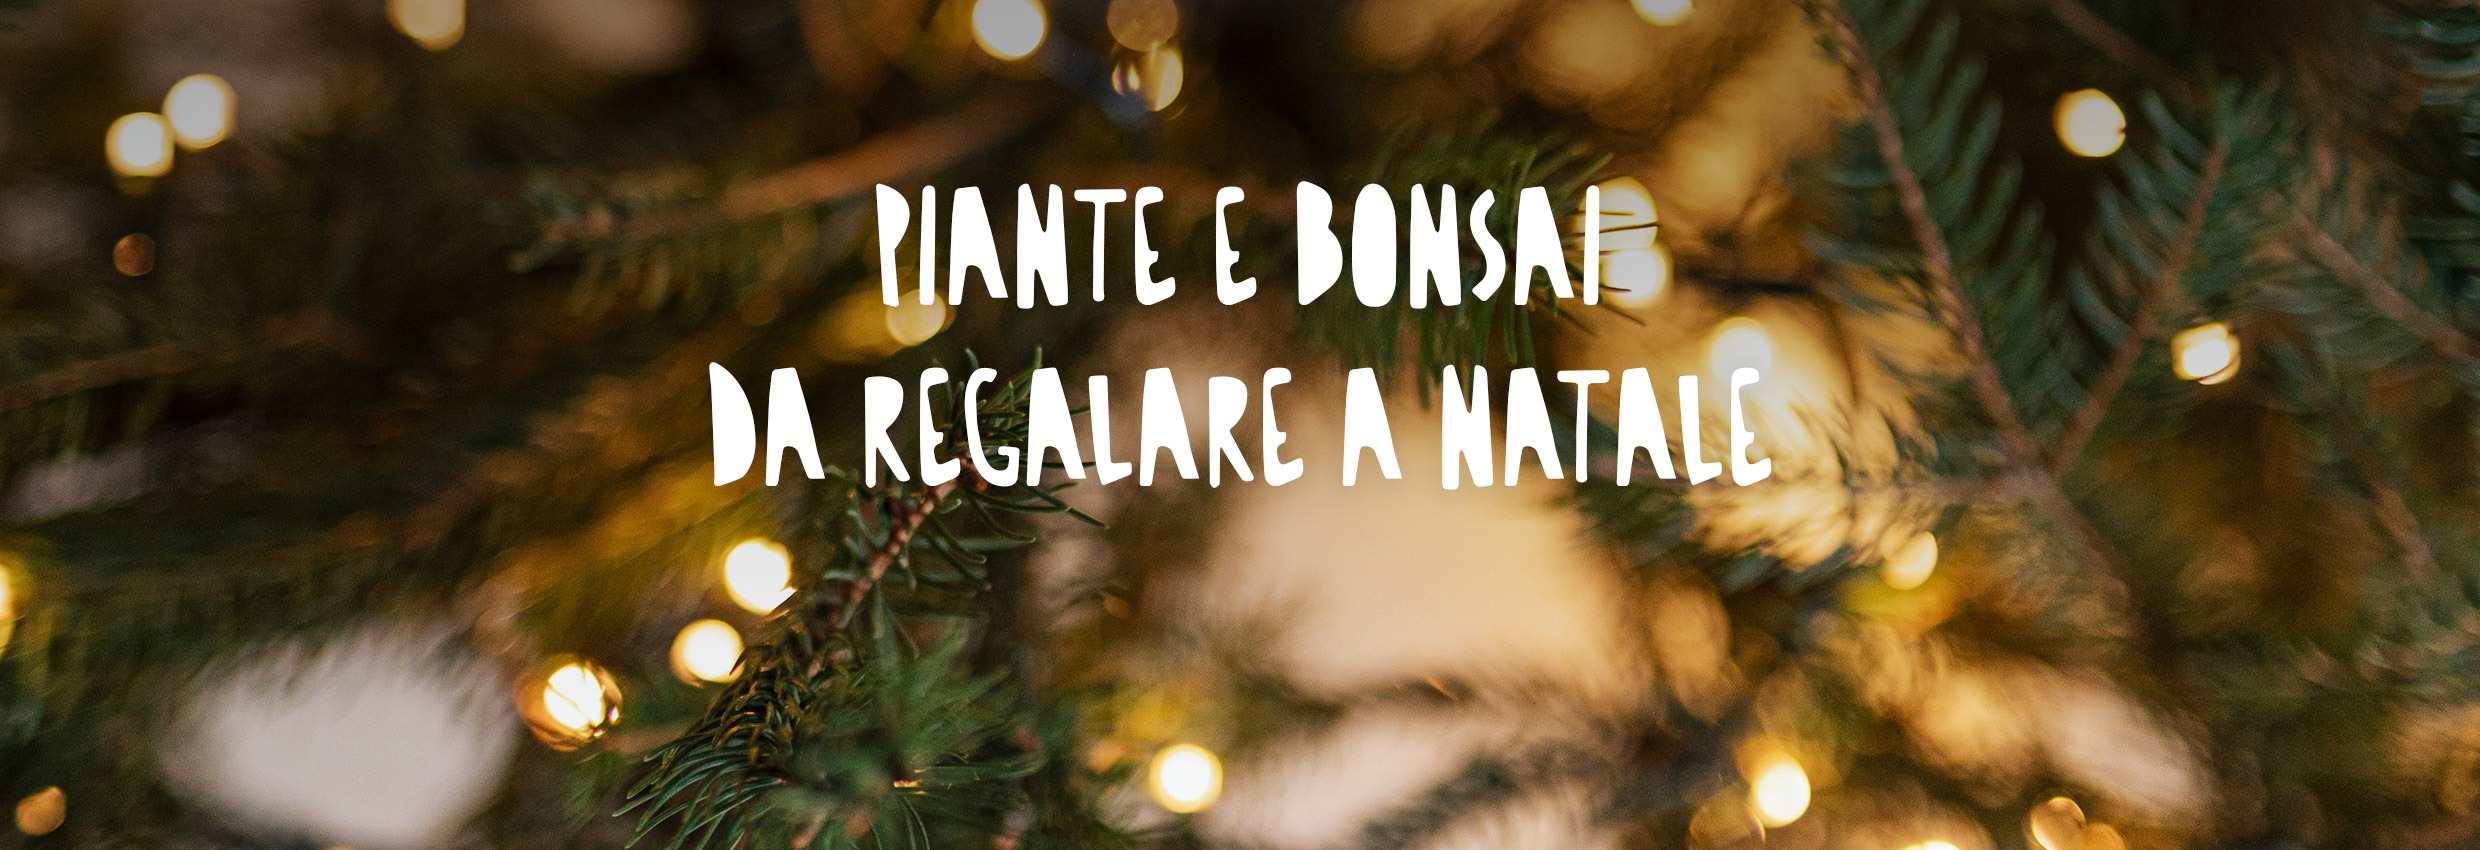 Cosa significa bonsai e perché è un bel regalo da fare a una persona cara -  inNaturale